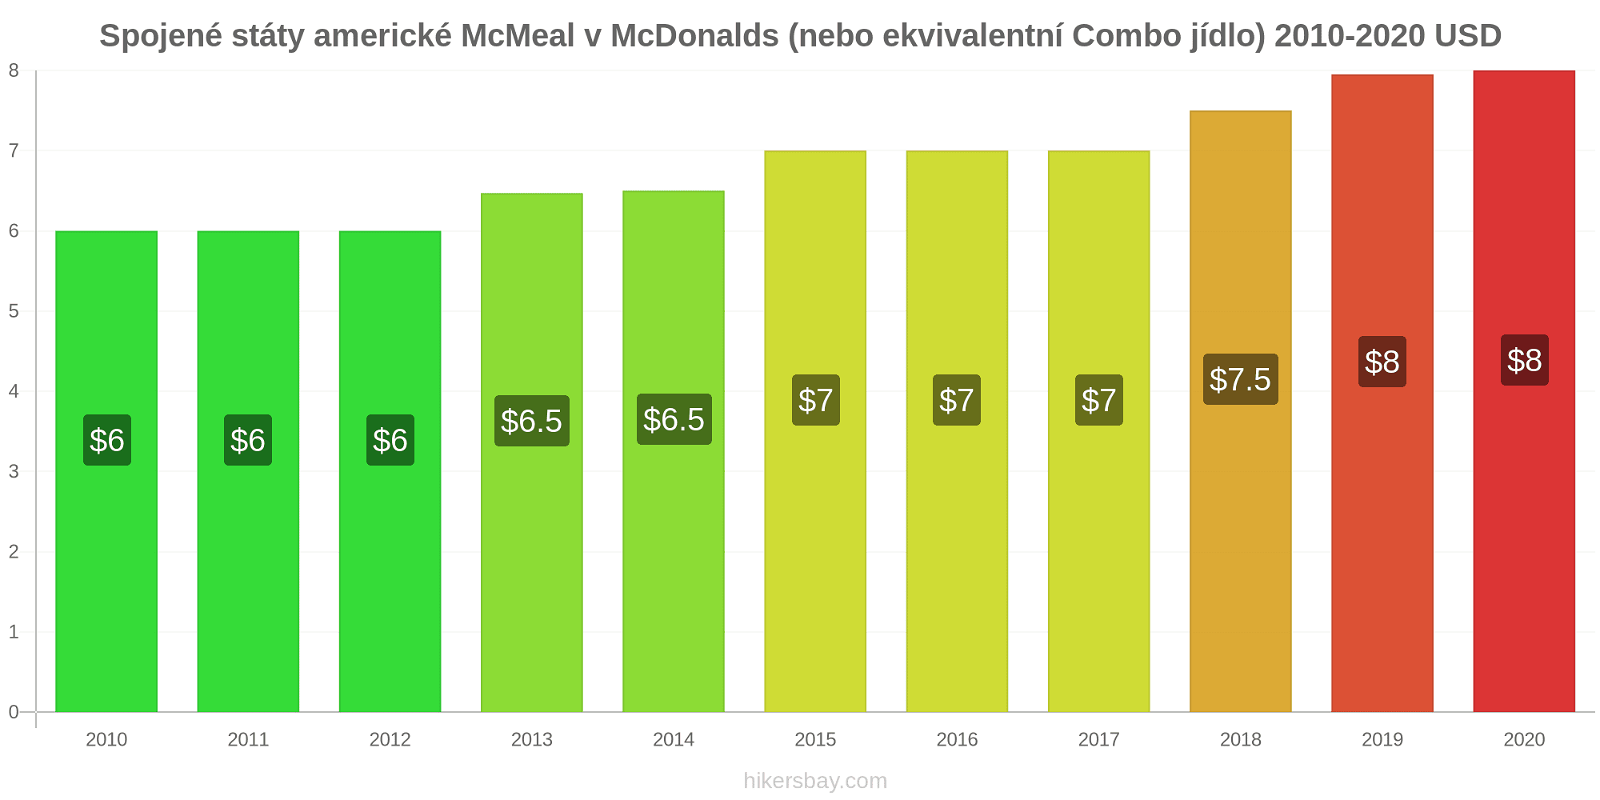 Spojené státy americké změny cen McMeal v McDonalds (nebo ekvivalentní Combo jídlo) hikersbay.com